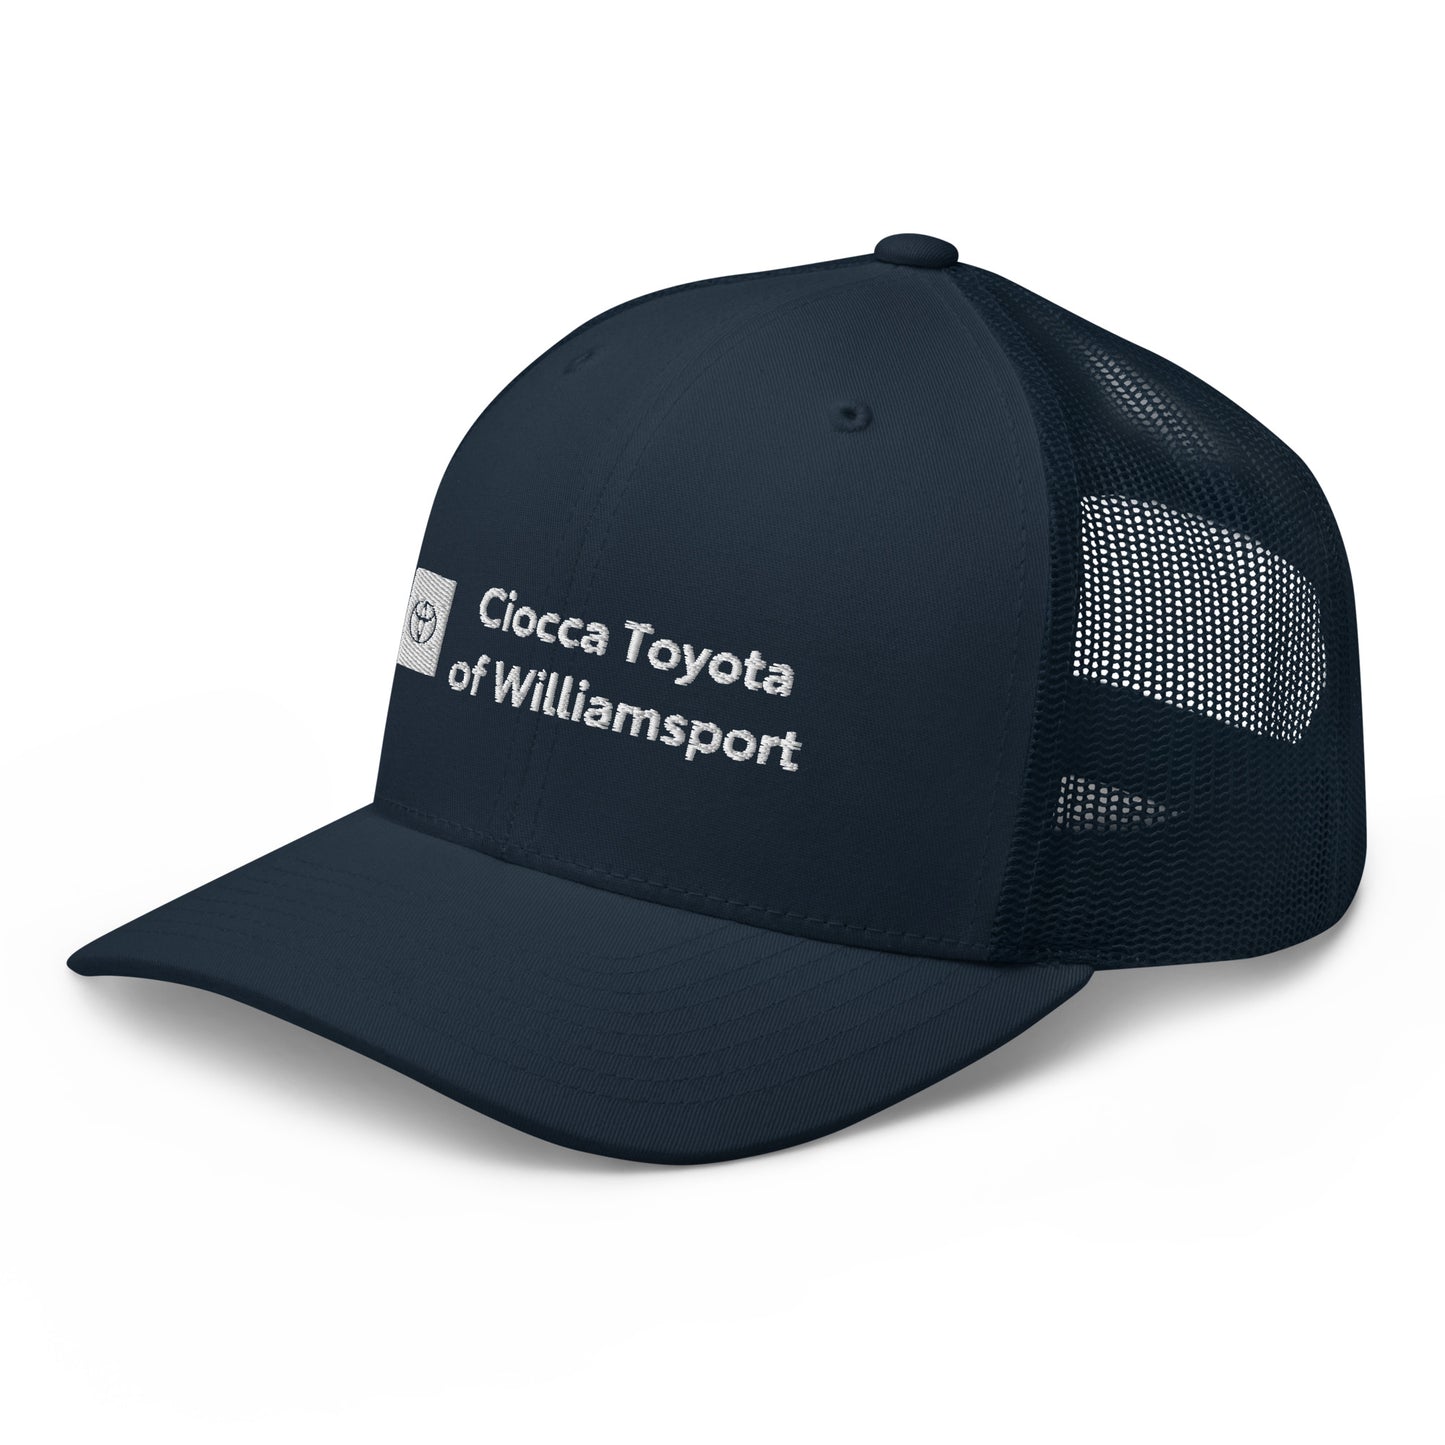 Trucker Cap - Toyota Williamsport